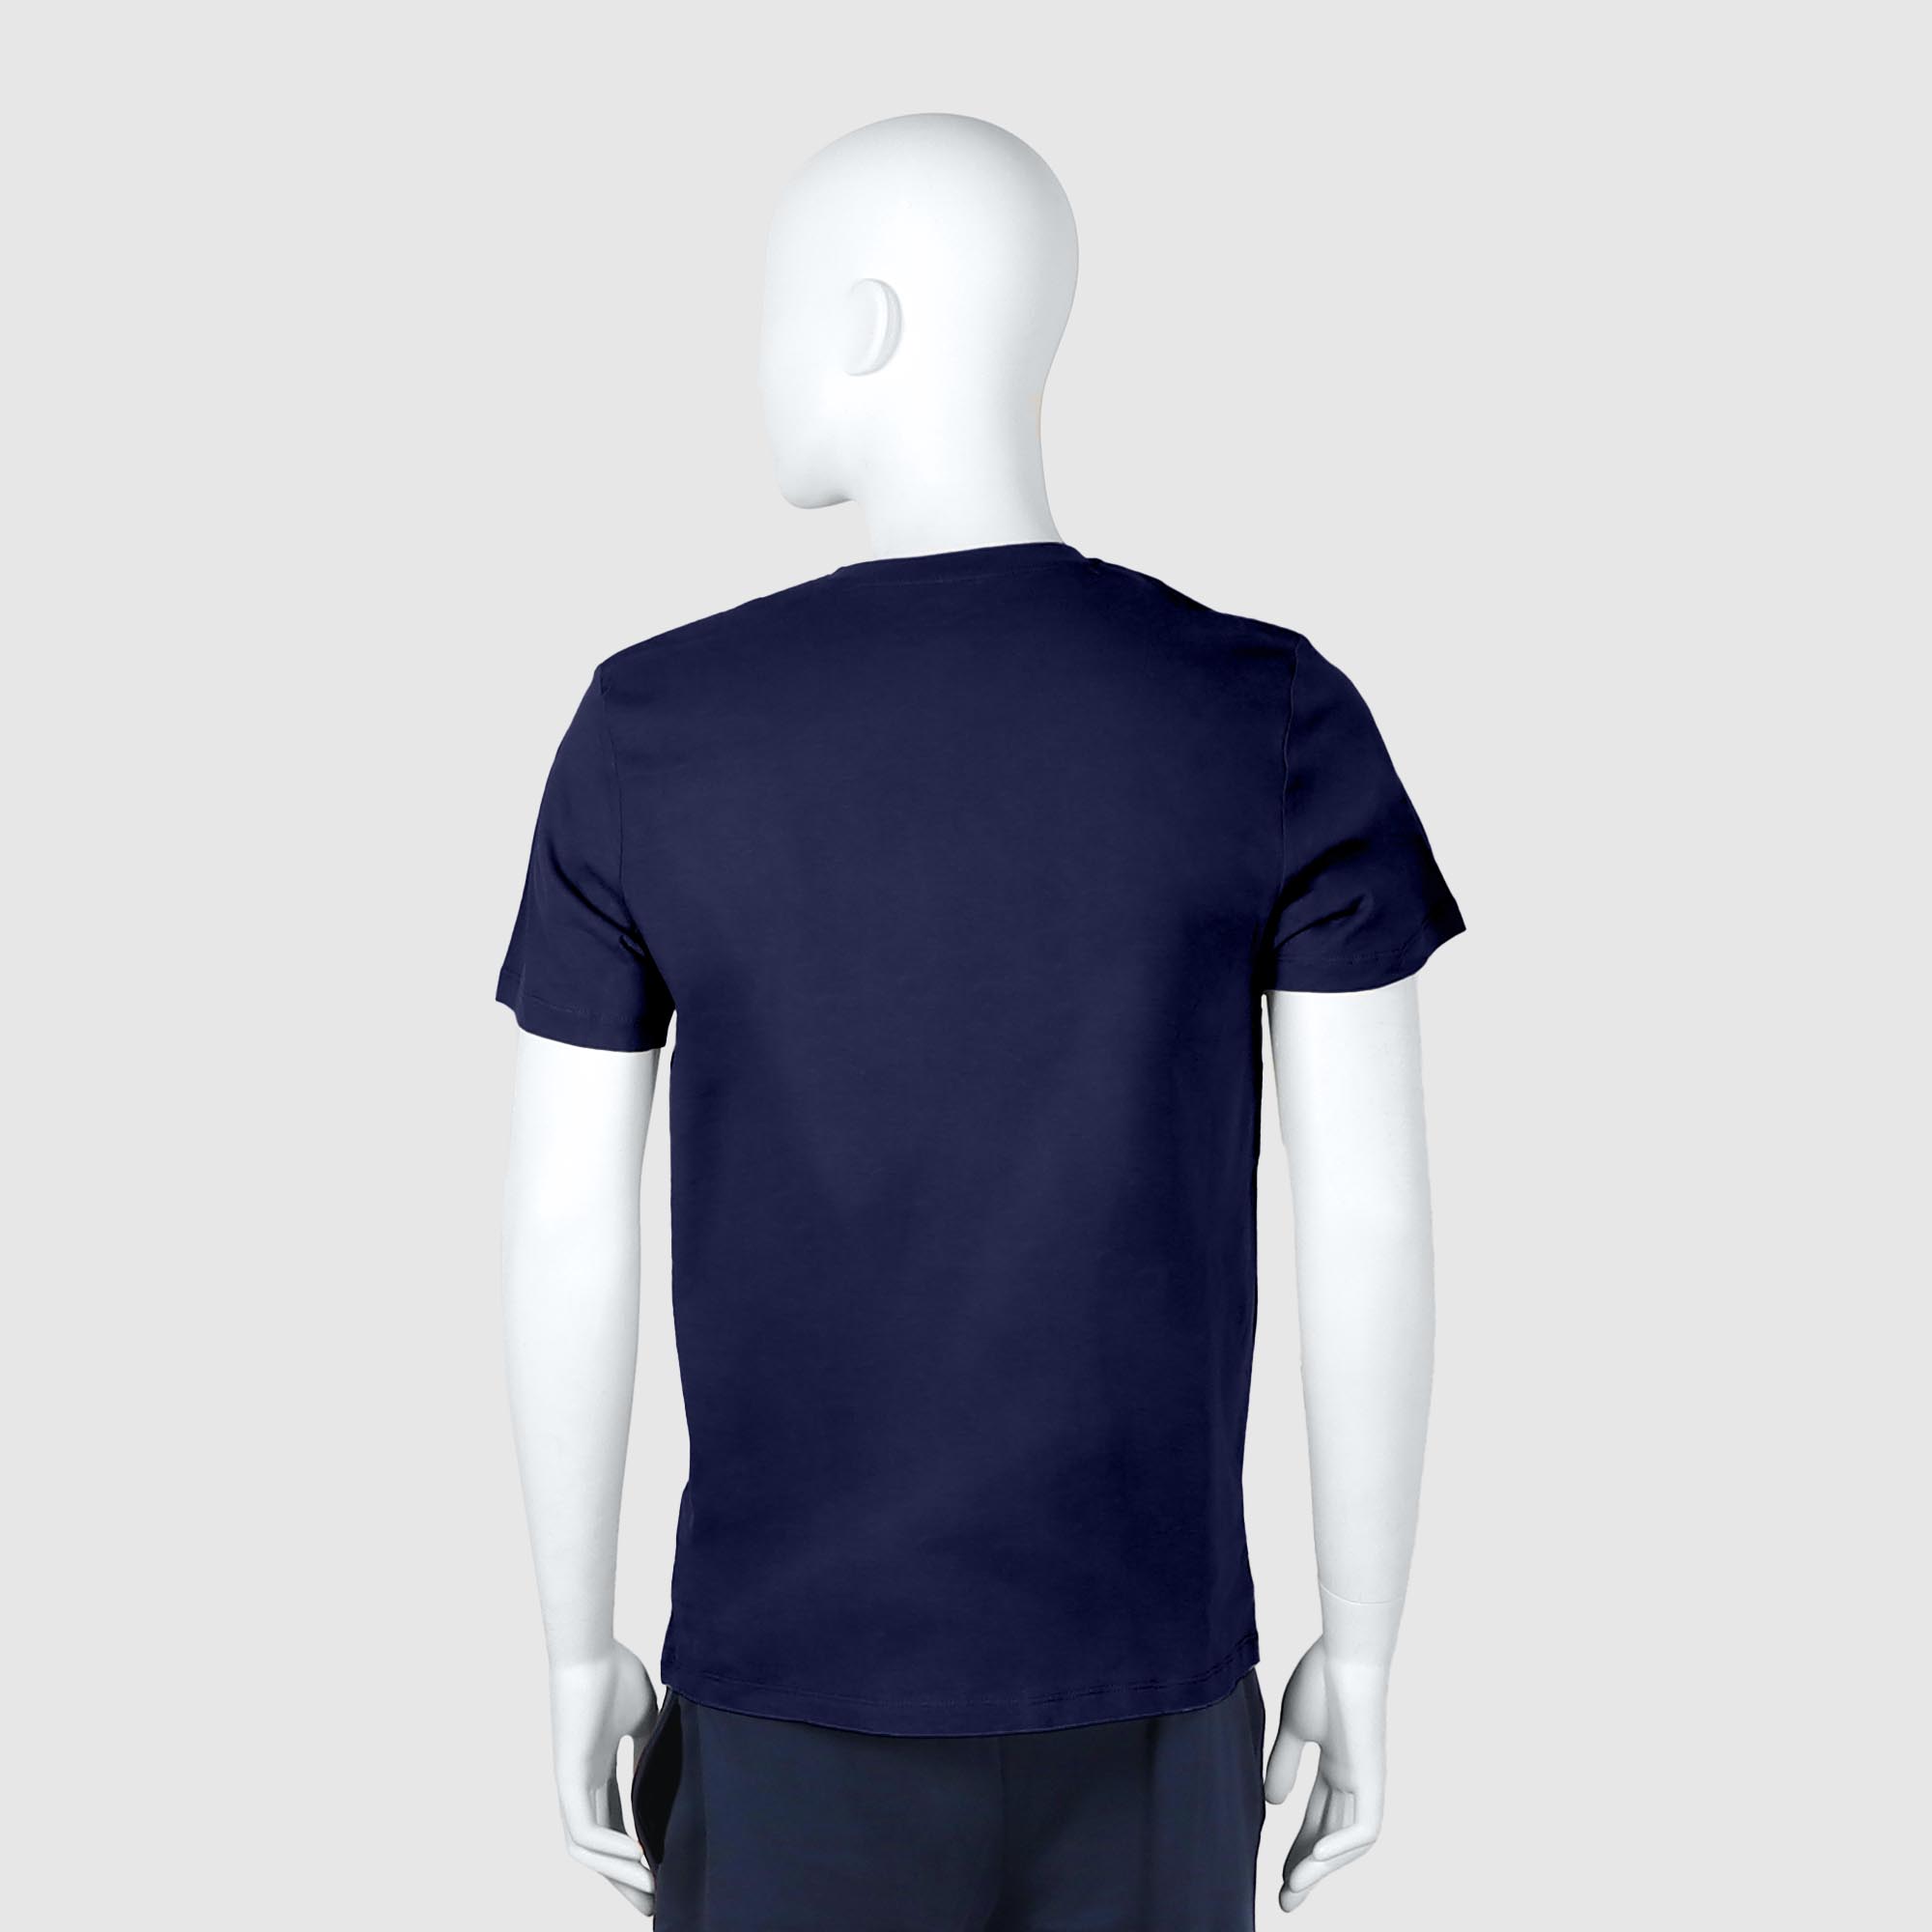 Мужская футболка Diva Teks синяя (DTD-05), цвет синий, размер 44-46 - фото 2